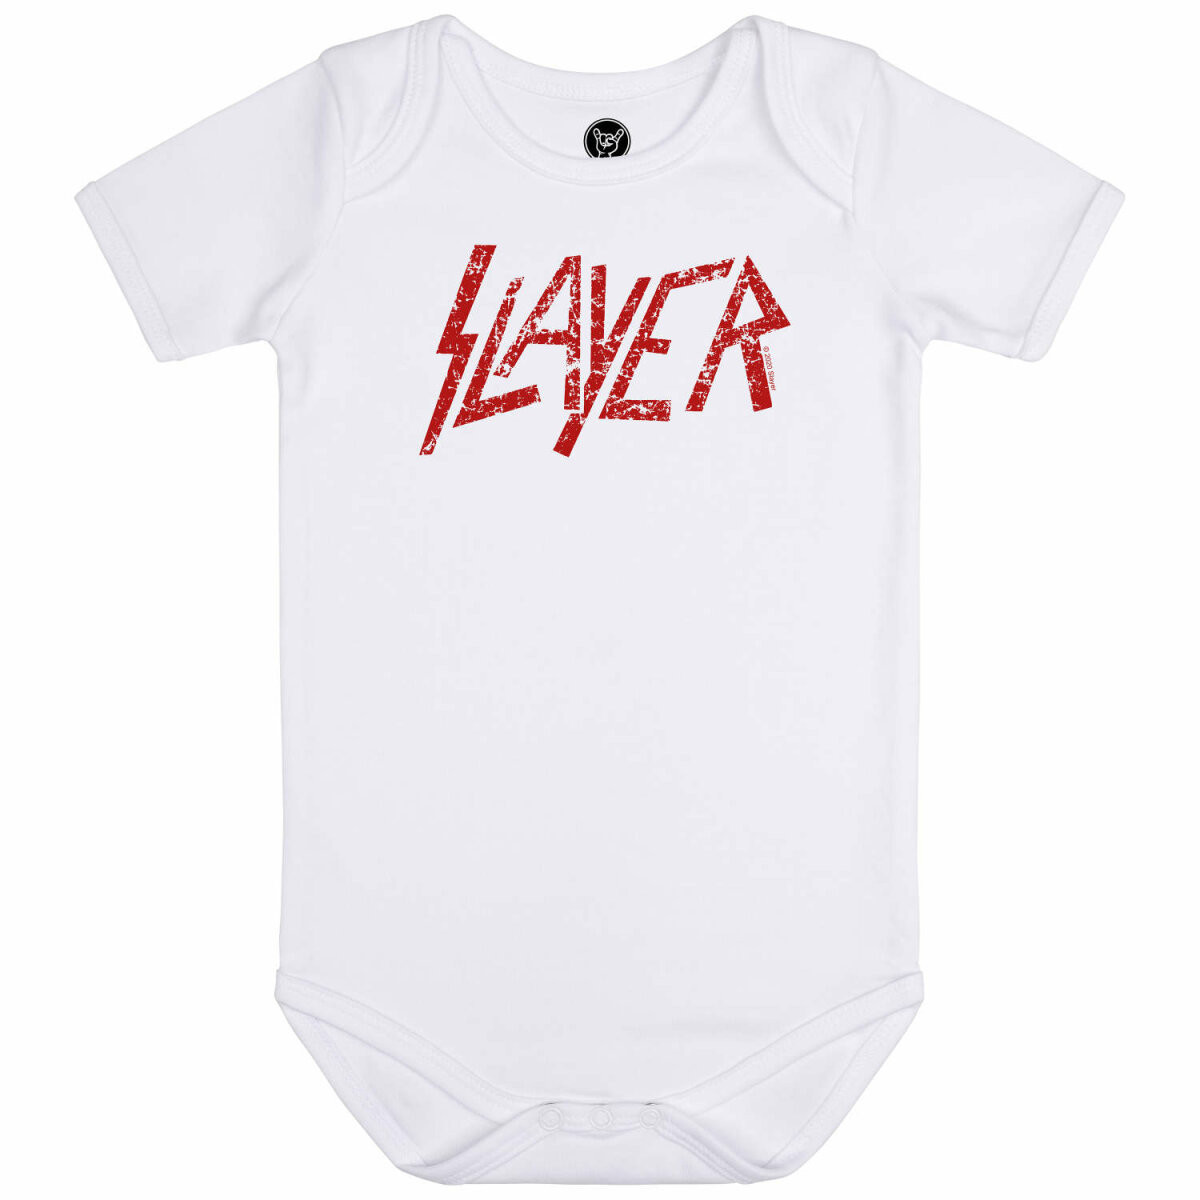 Slayer Baby Bodysuit White - (Logo Red) 